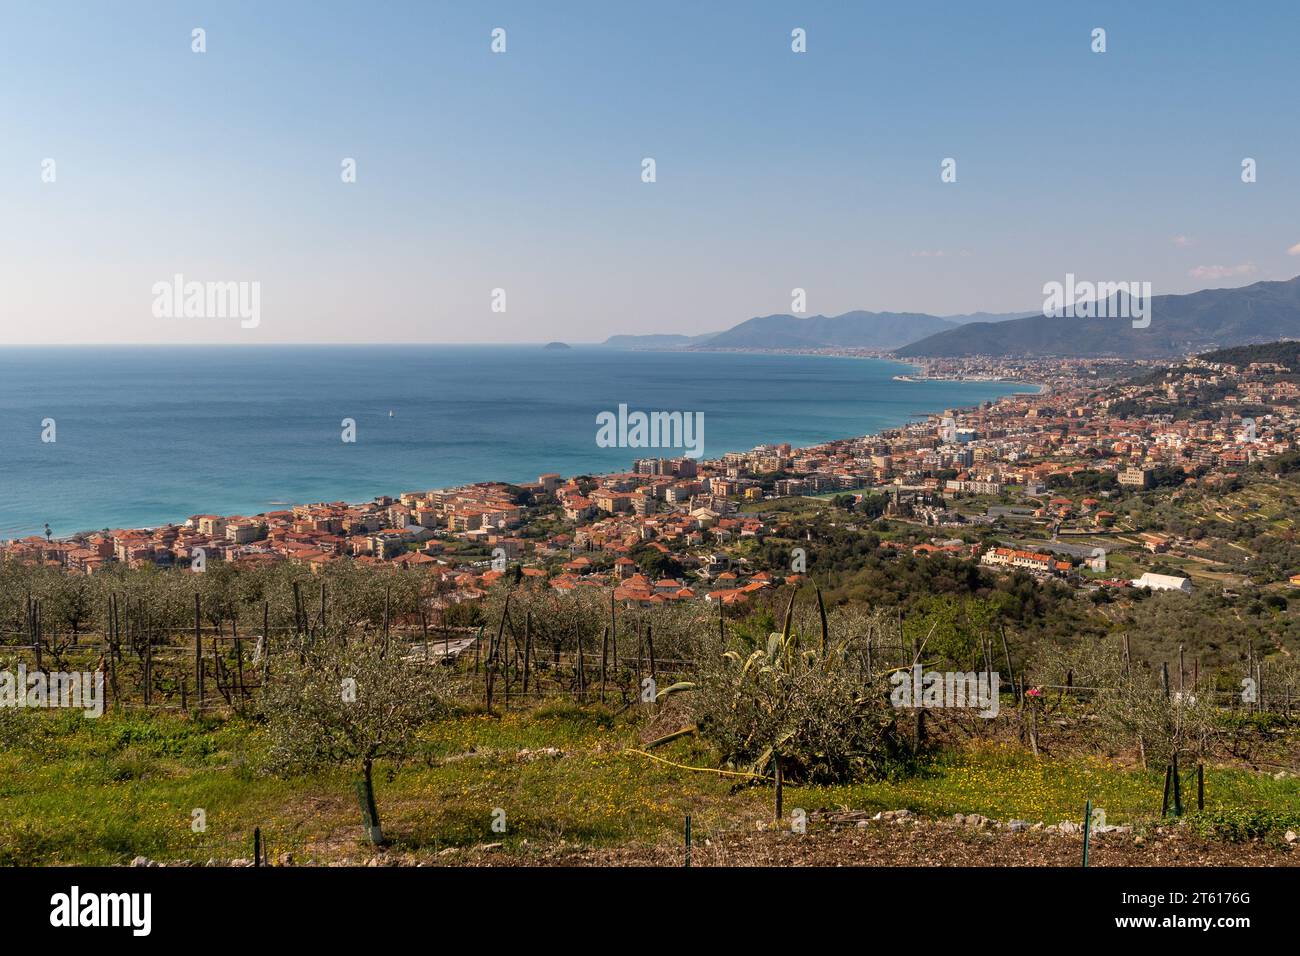 Panoramablick auf die PalmenRiviera von einem Olivenhain mit den Küstenstädten Pietra Ligure, Loano und der Insel Gallinara, Savona, Ligurien Italien Stockfoto